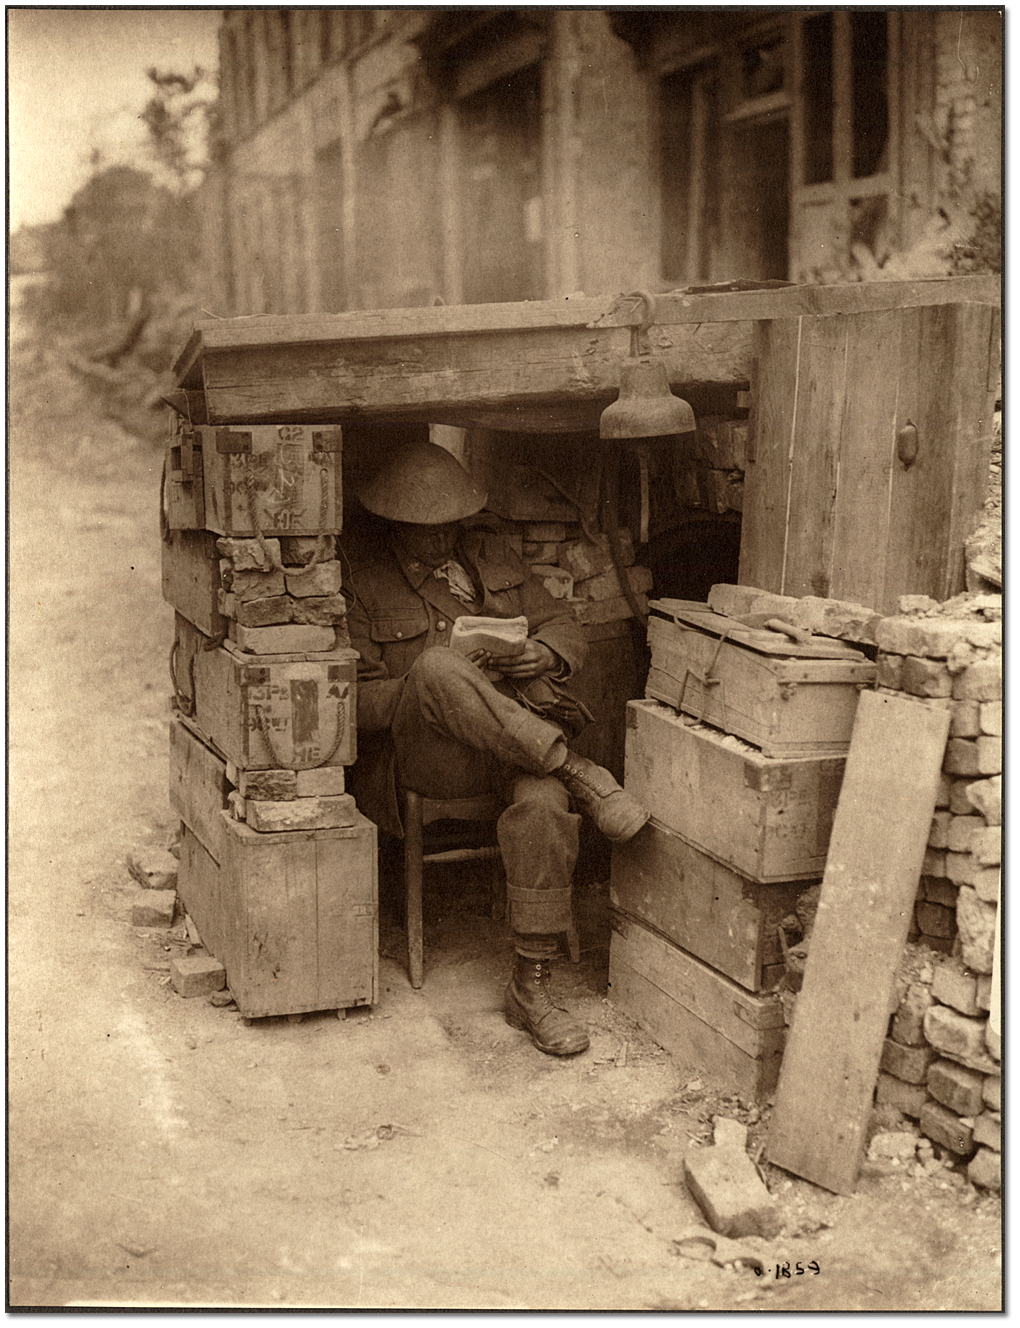 Une sentinelle canadienne à son poste composé de caisses de munitions et de briques de vieilles maisons, [vers 1918] 

